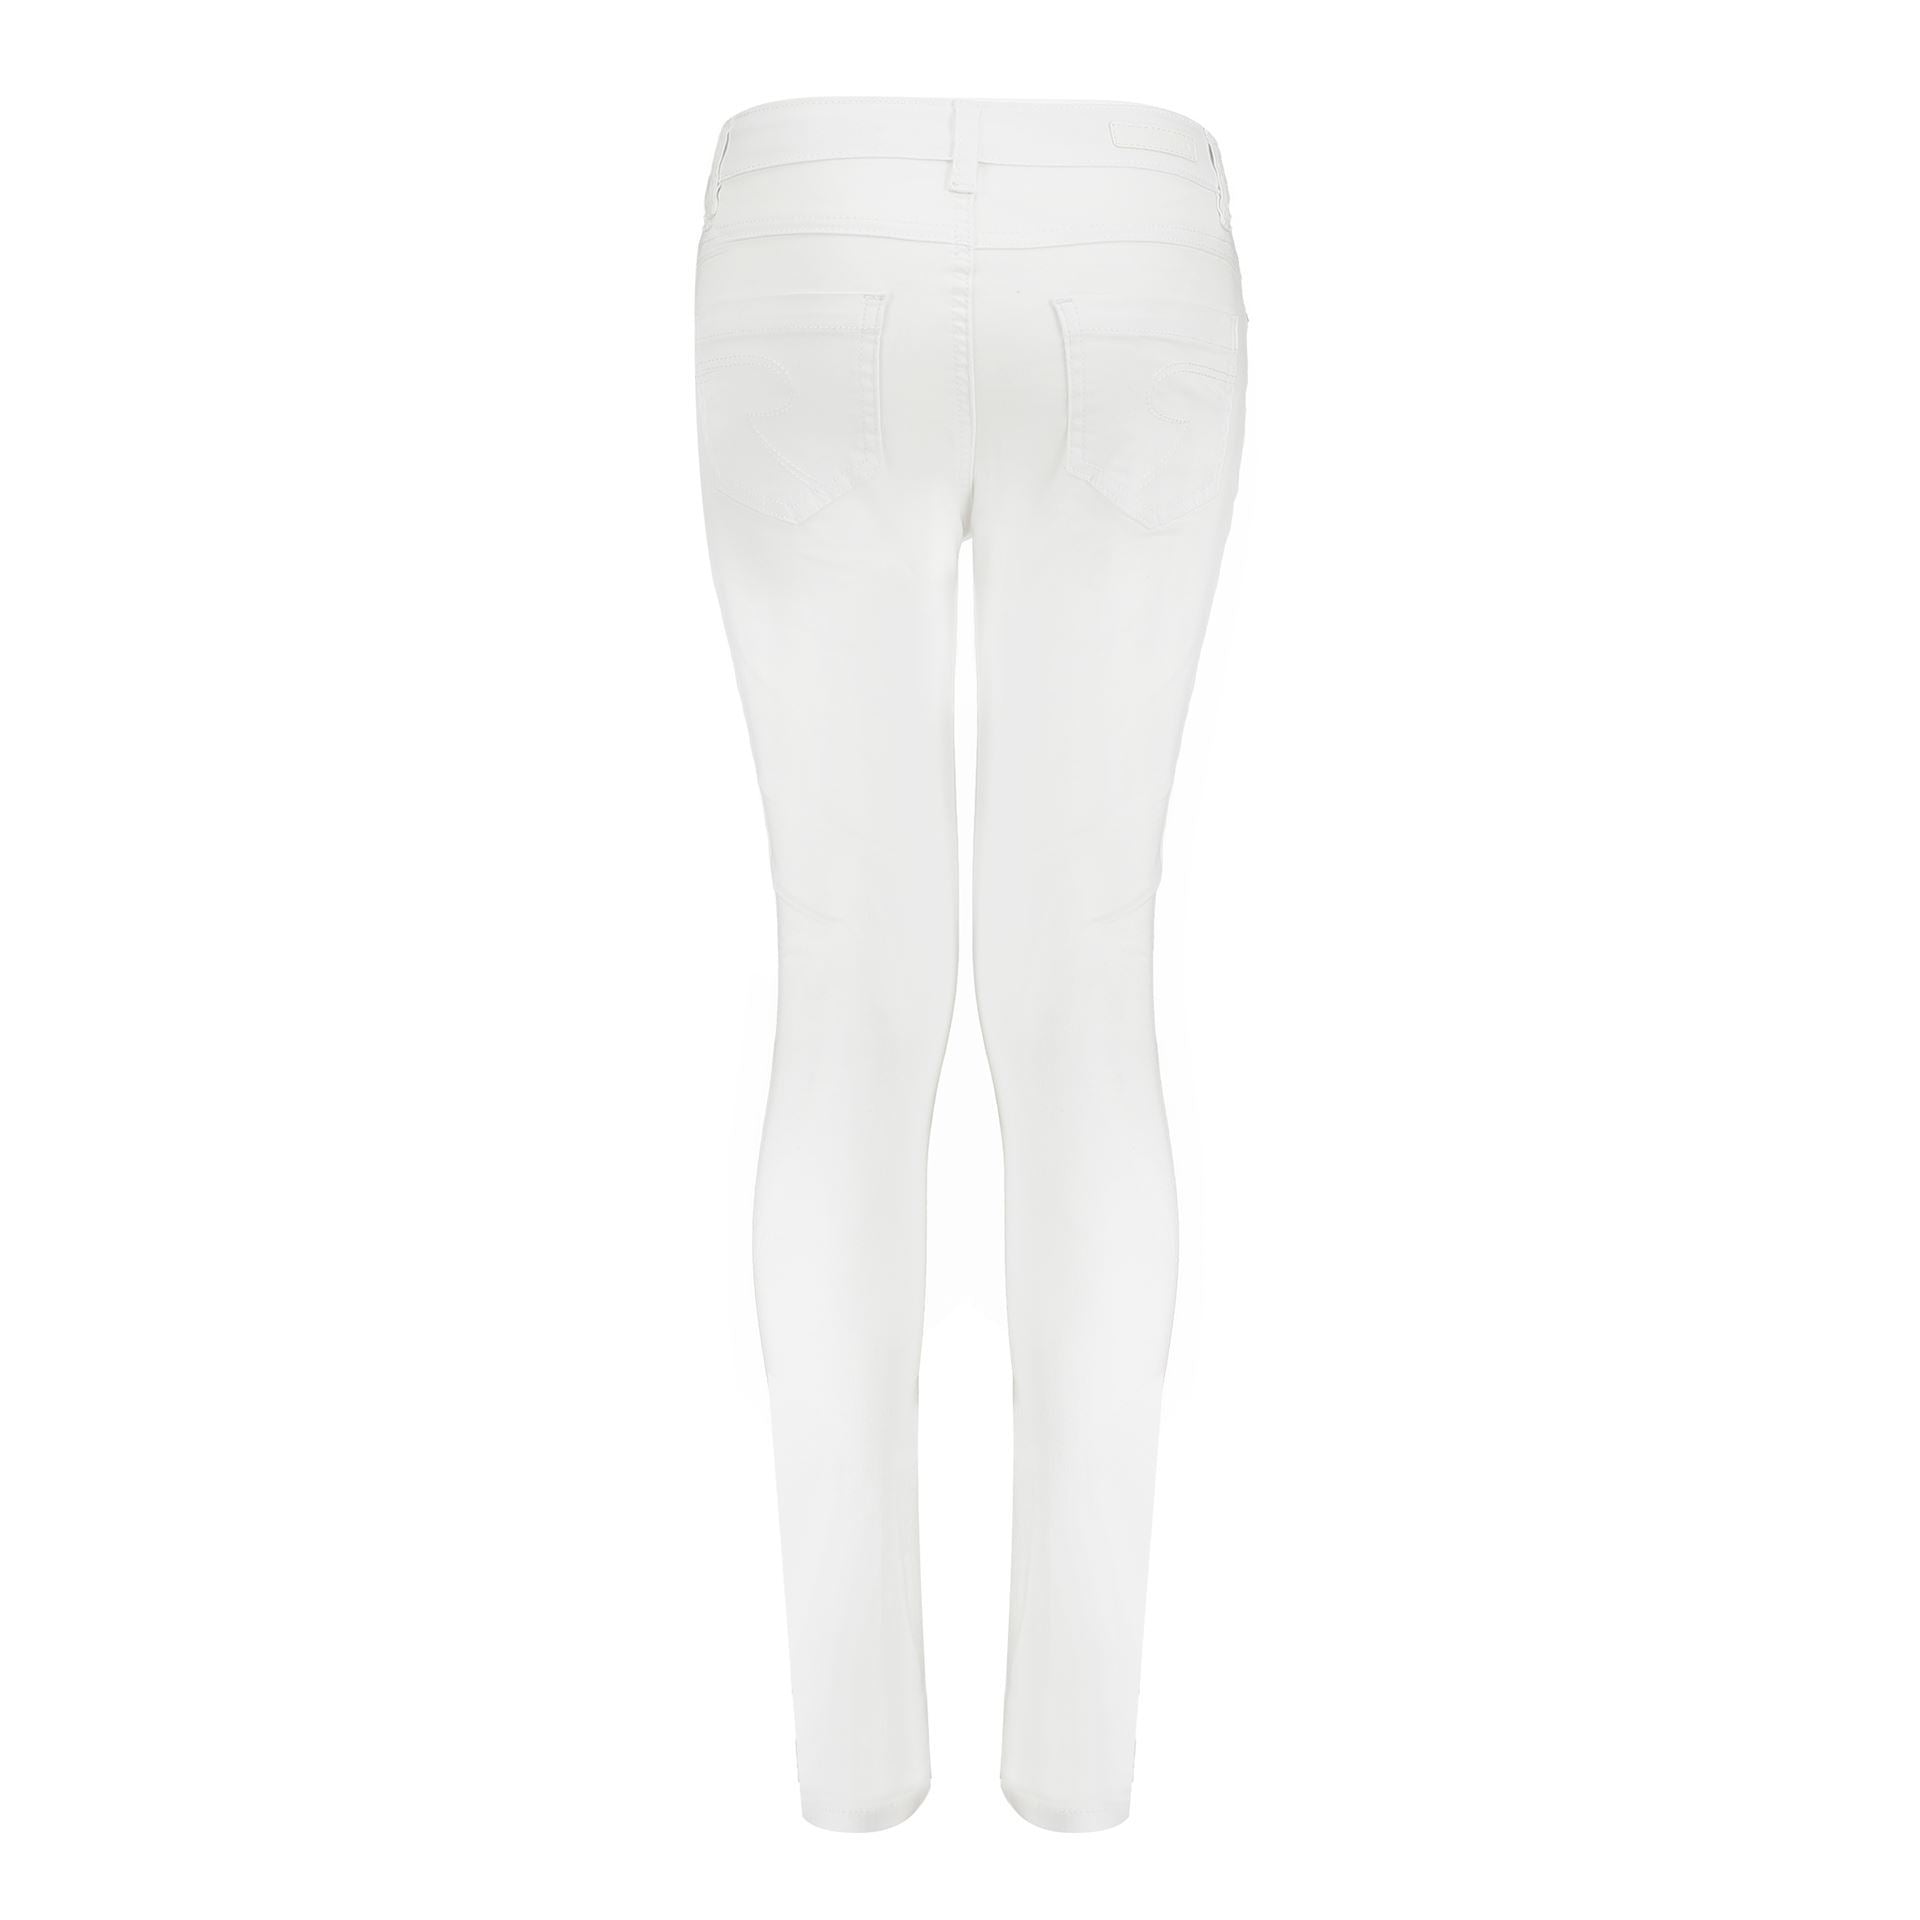 Meisjes 5-Pocket Pants van Geisha in de kleur White in maat 176.